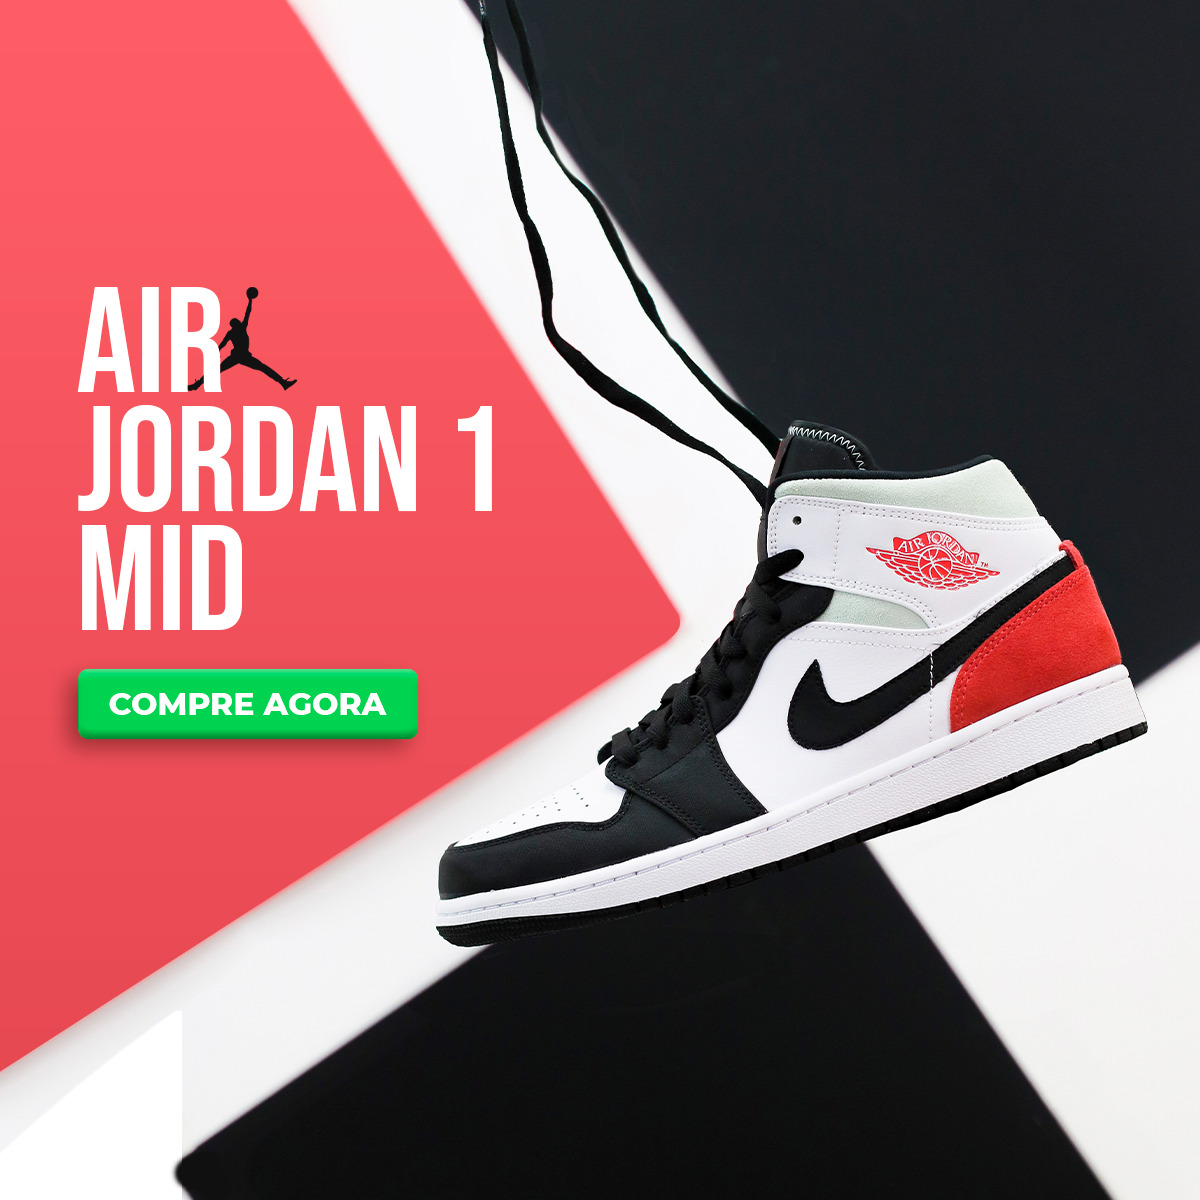 Jordan - Mundo Rua - Sneakers, Skate e Graffiti Shop